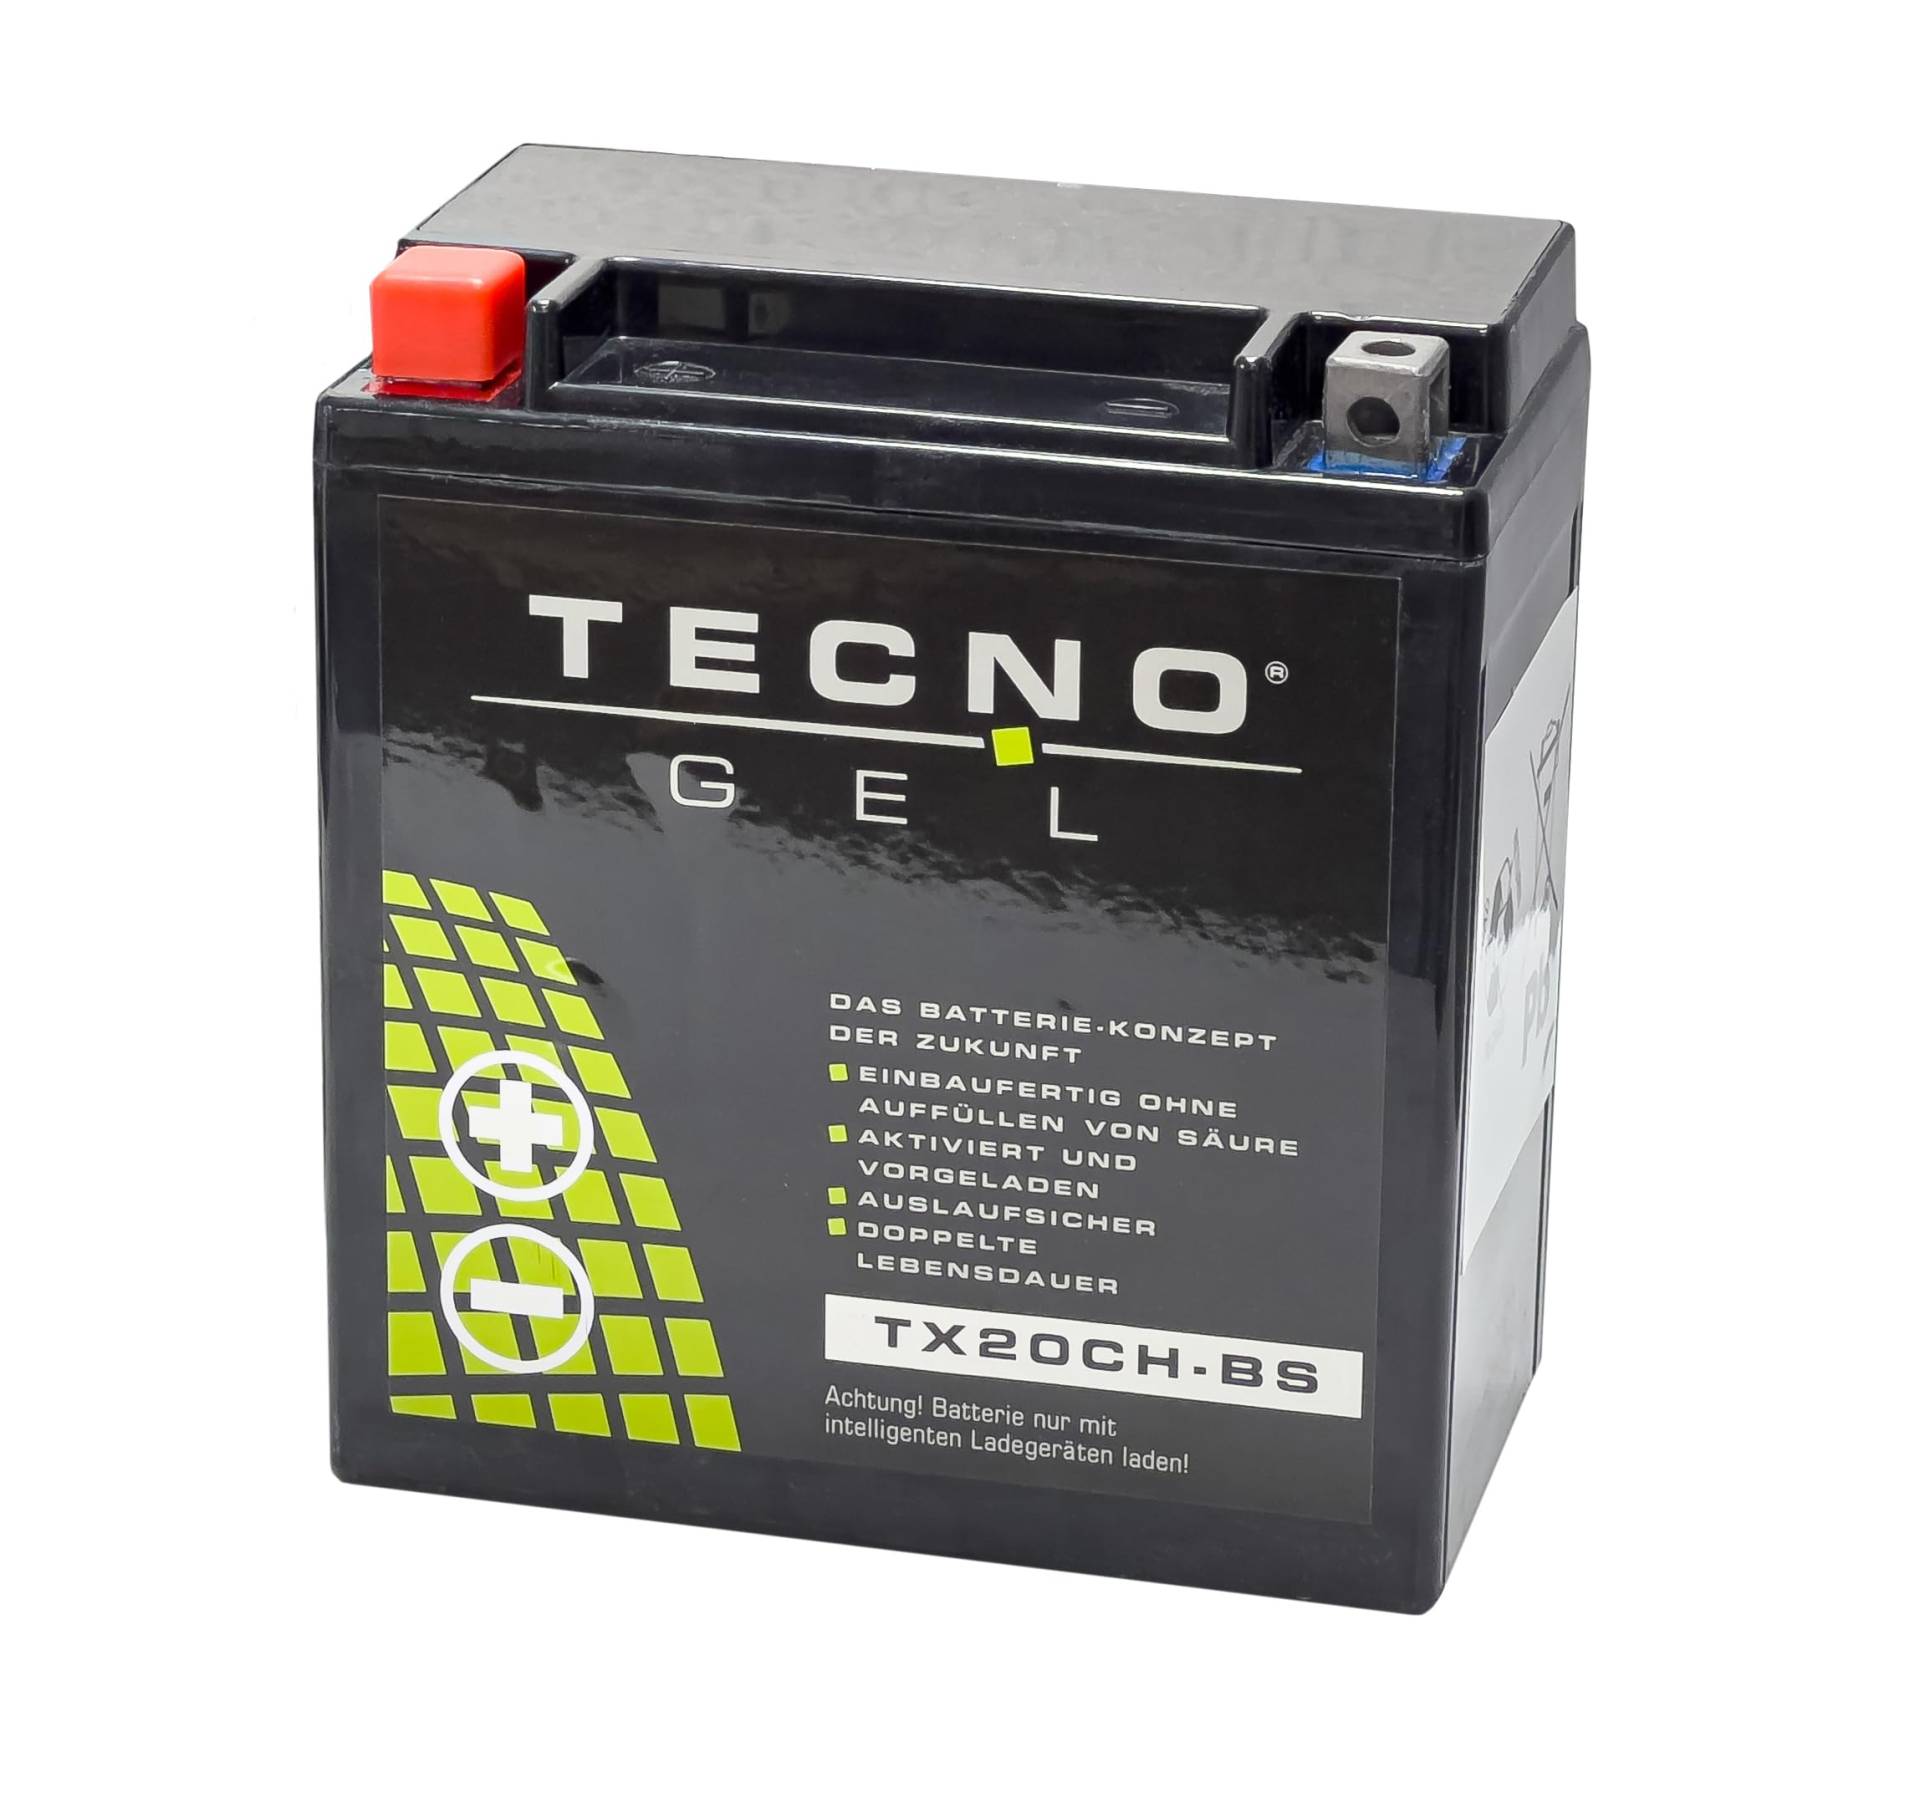 TECNO-GEL Motorrad-Batterie für YTX20CH-BS für MOTO GUZZI California 1400 2013-2017, 12V Gel-Batterie 18Ah, 150x87x161 mm von Wirth-Federn